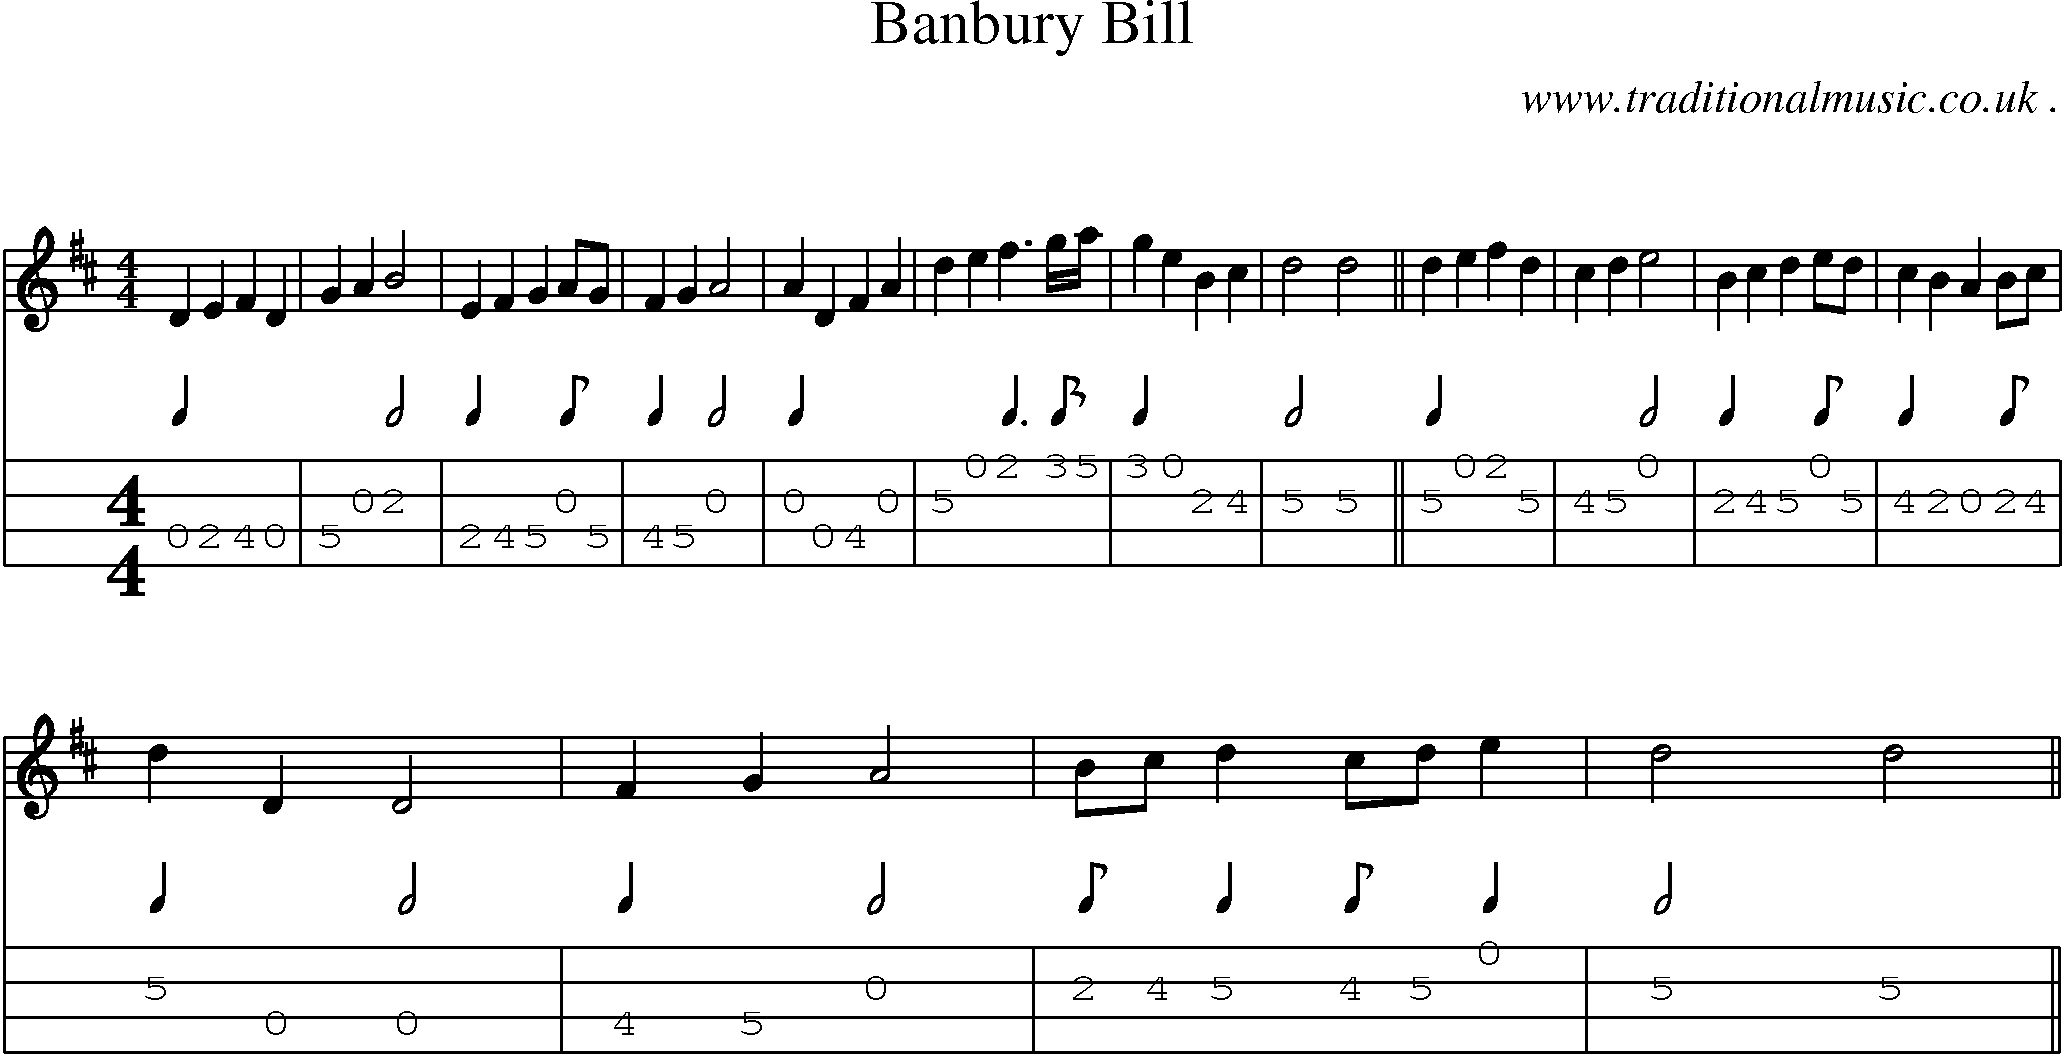 Sheet-Music and Mandolin Tabs for Banbury Bill